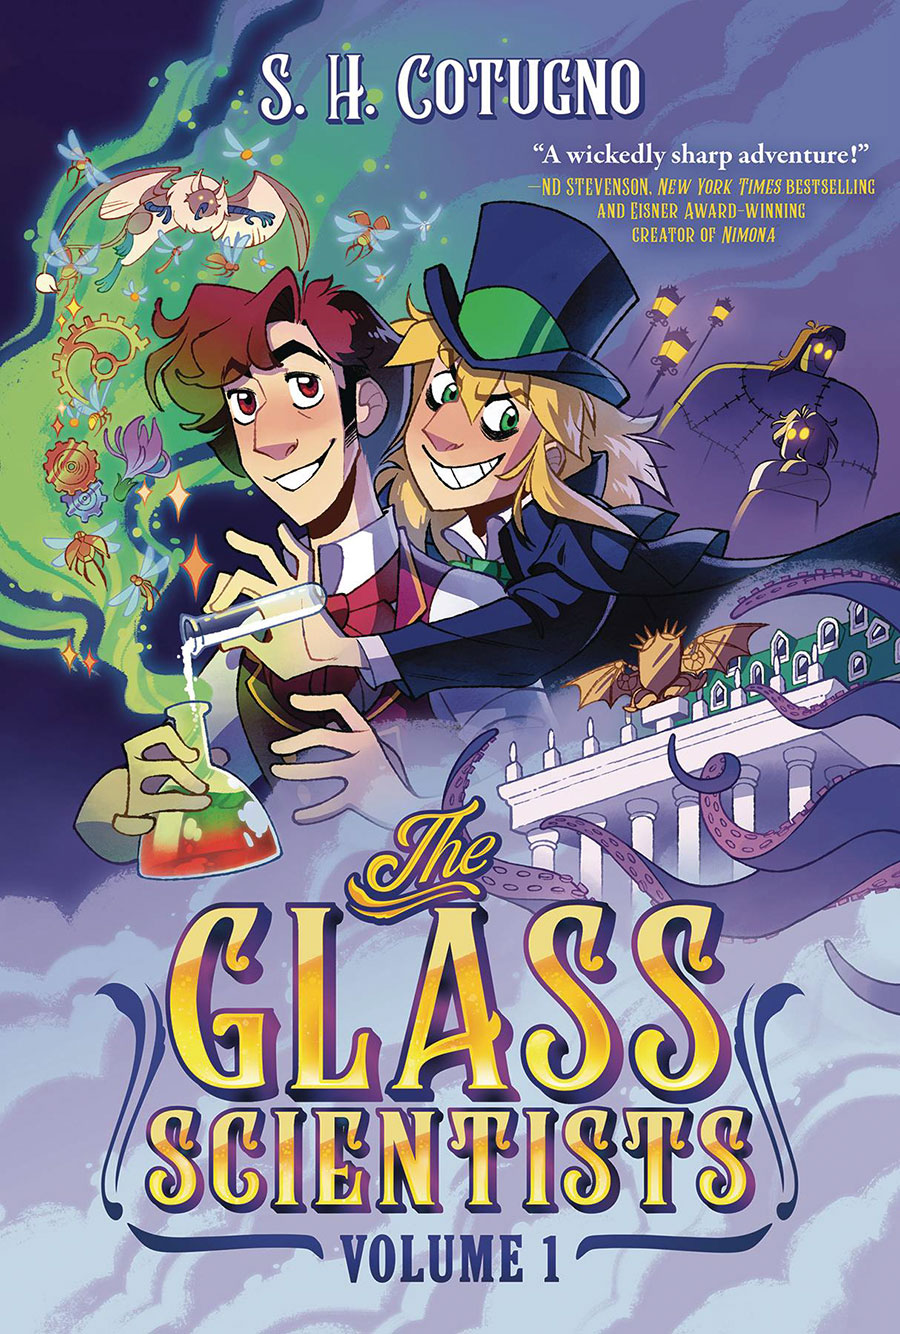 Glass Scientists Vol 1 TP